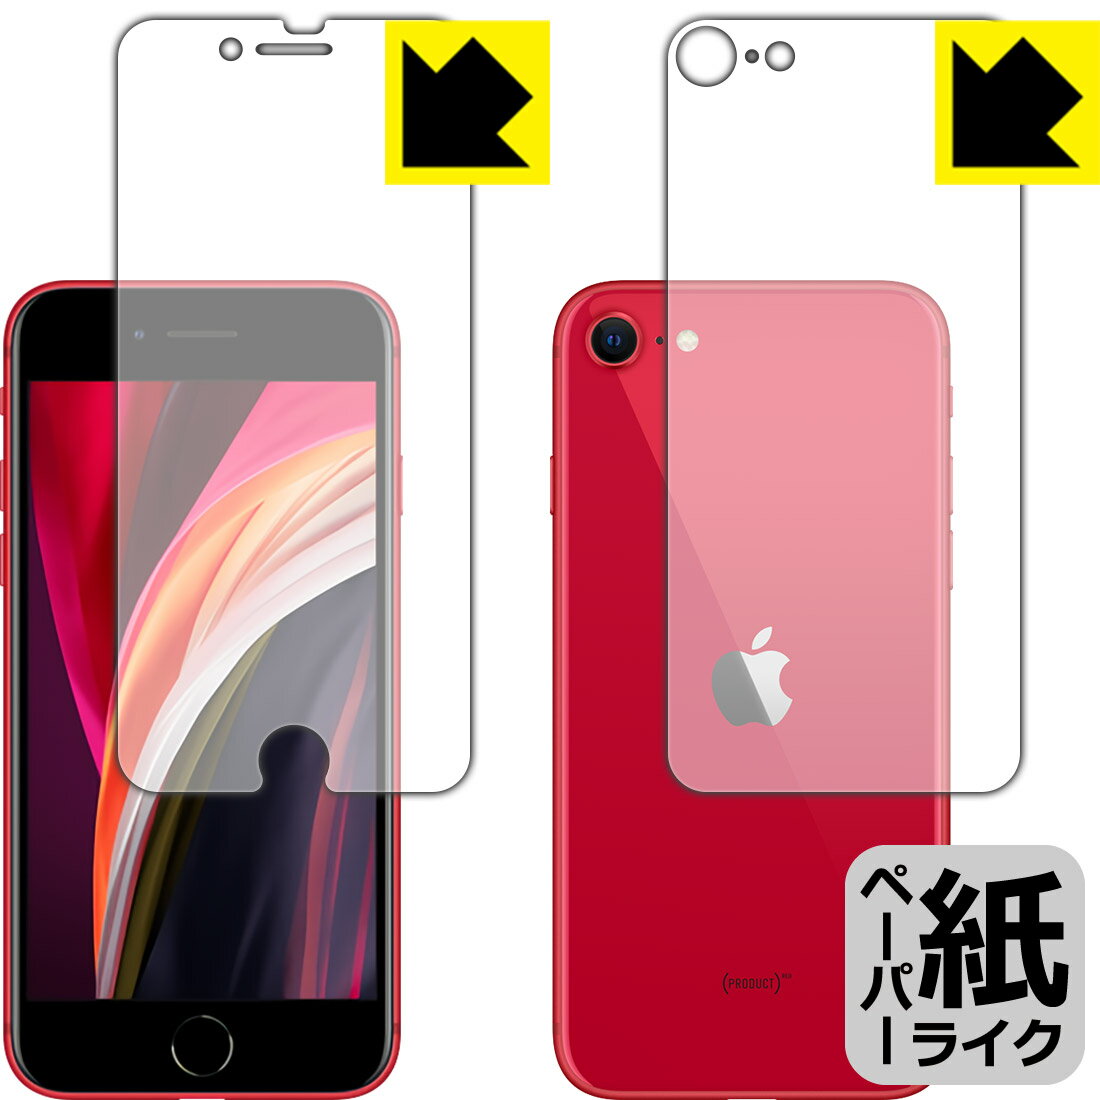 ペーパーライク保護フィルム iPhone SE (第2世代) 両面セット 【O型】 日本製 自社製造直販